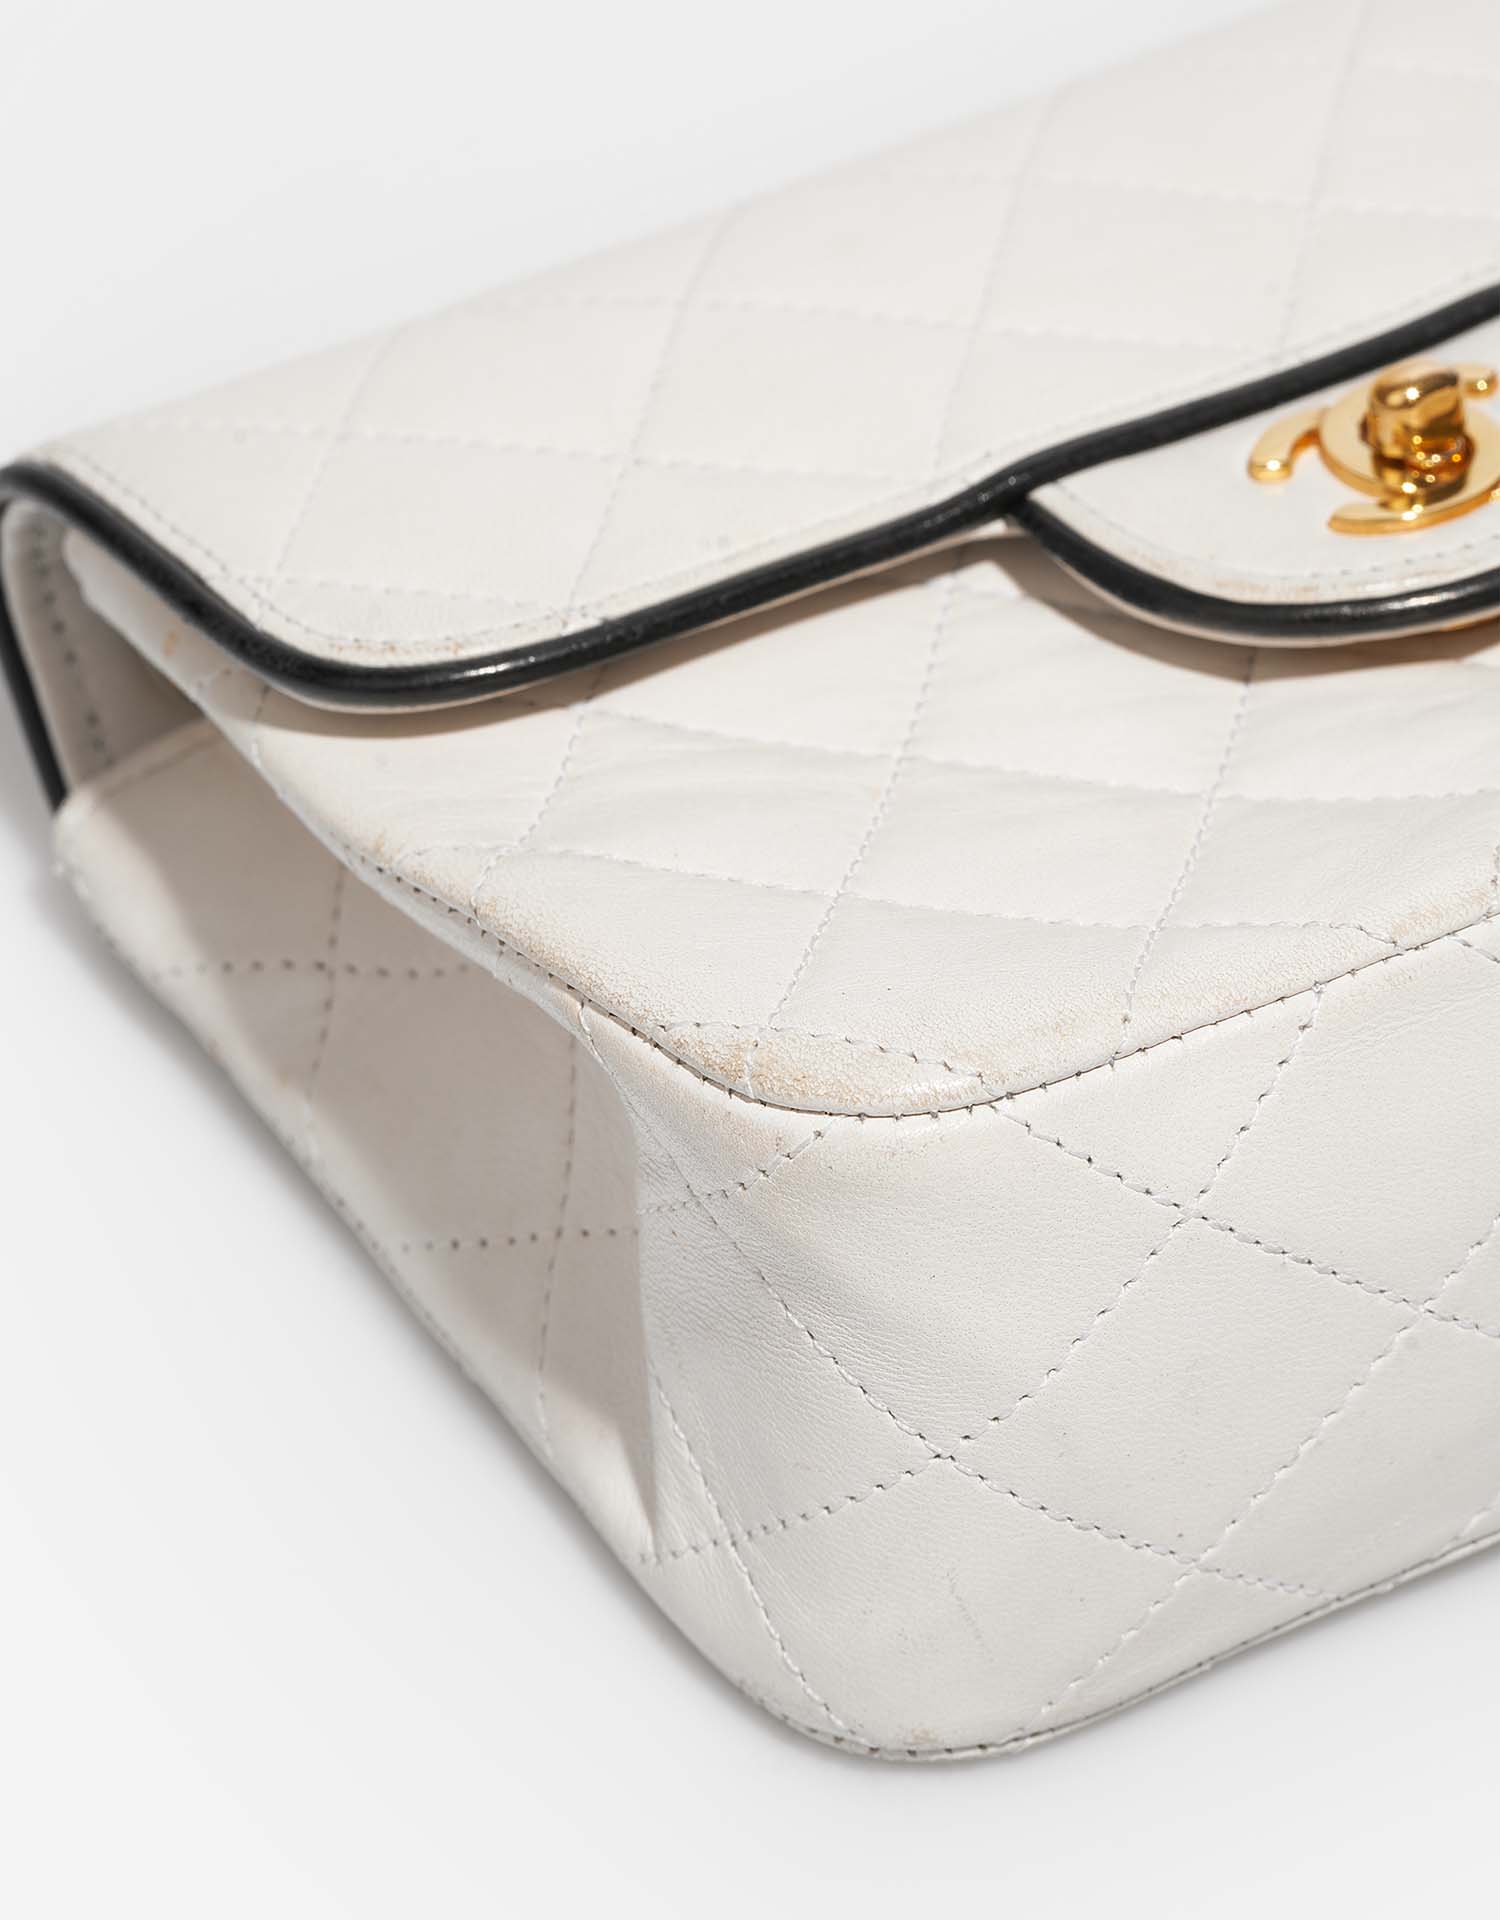 Chanel Timeless MiniSquare Weiß Gebrauchsspuren| Verkaufen Sie Ihre Designer-Tasche auf Saclab.com